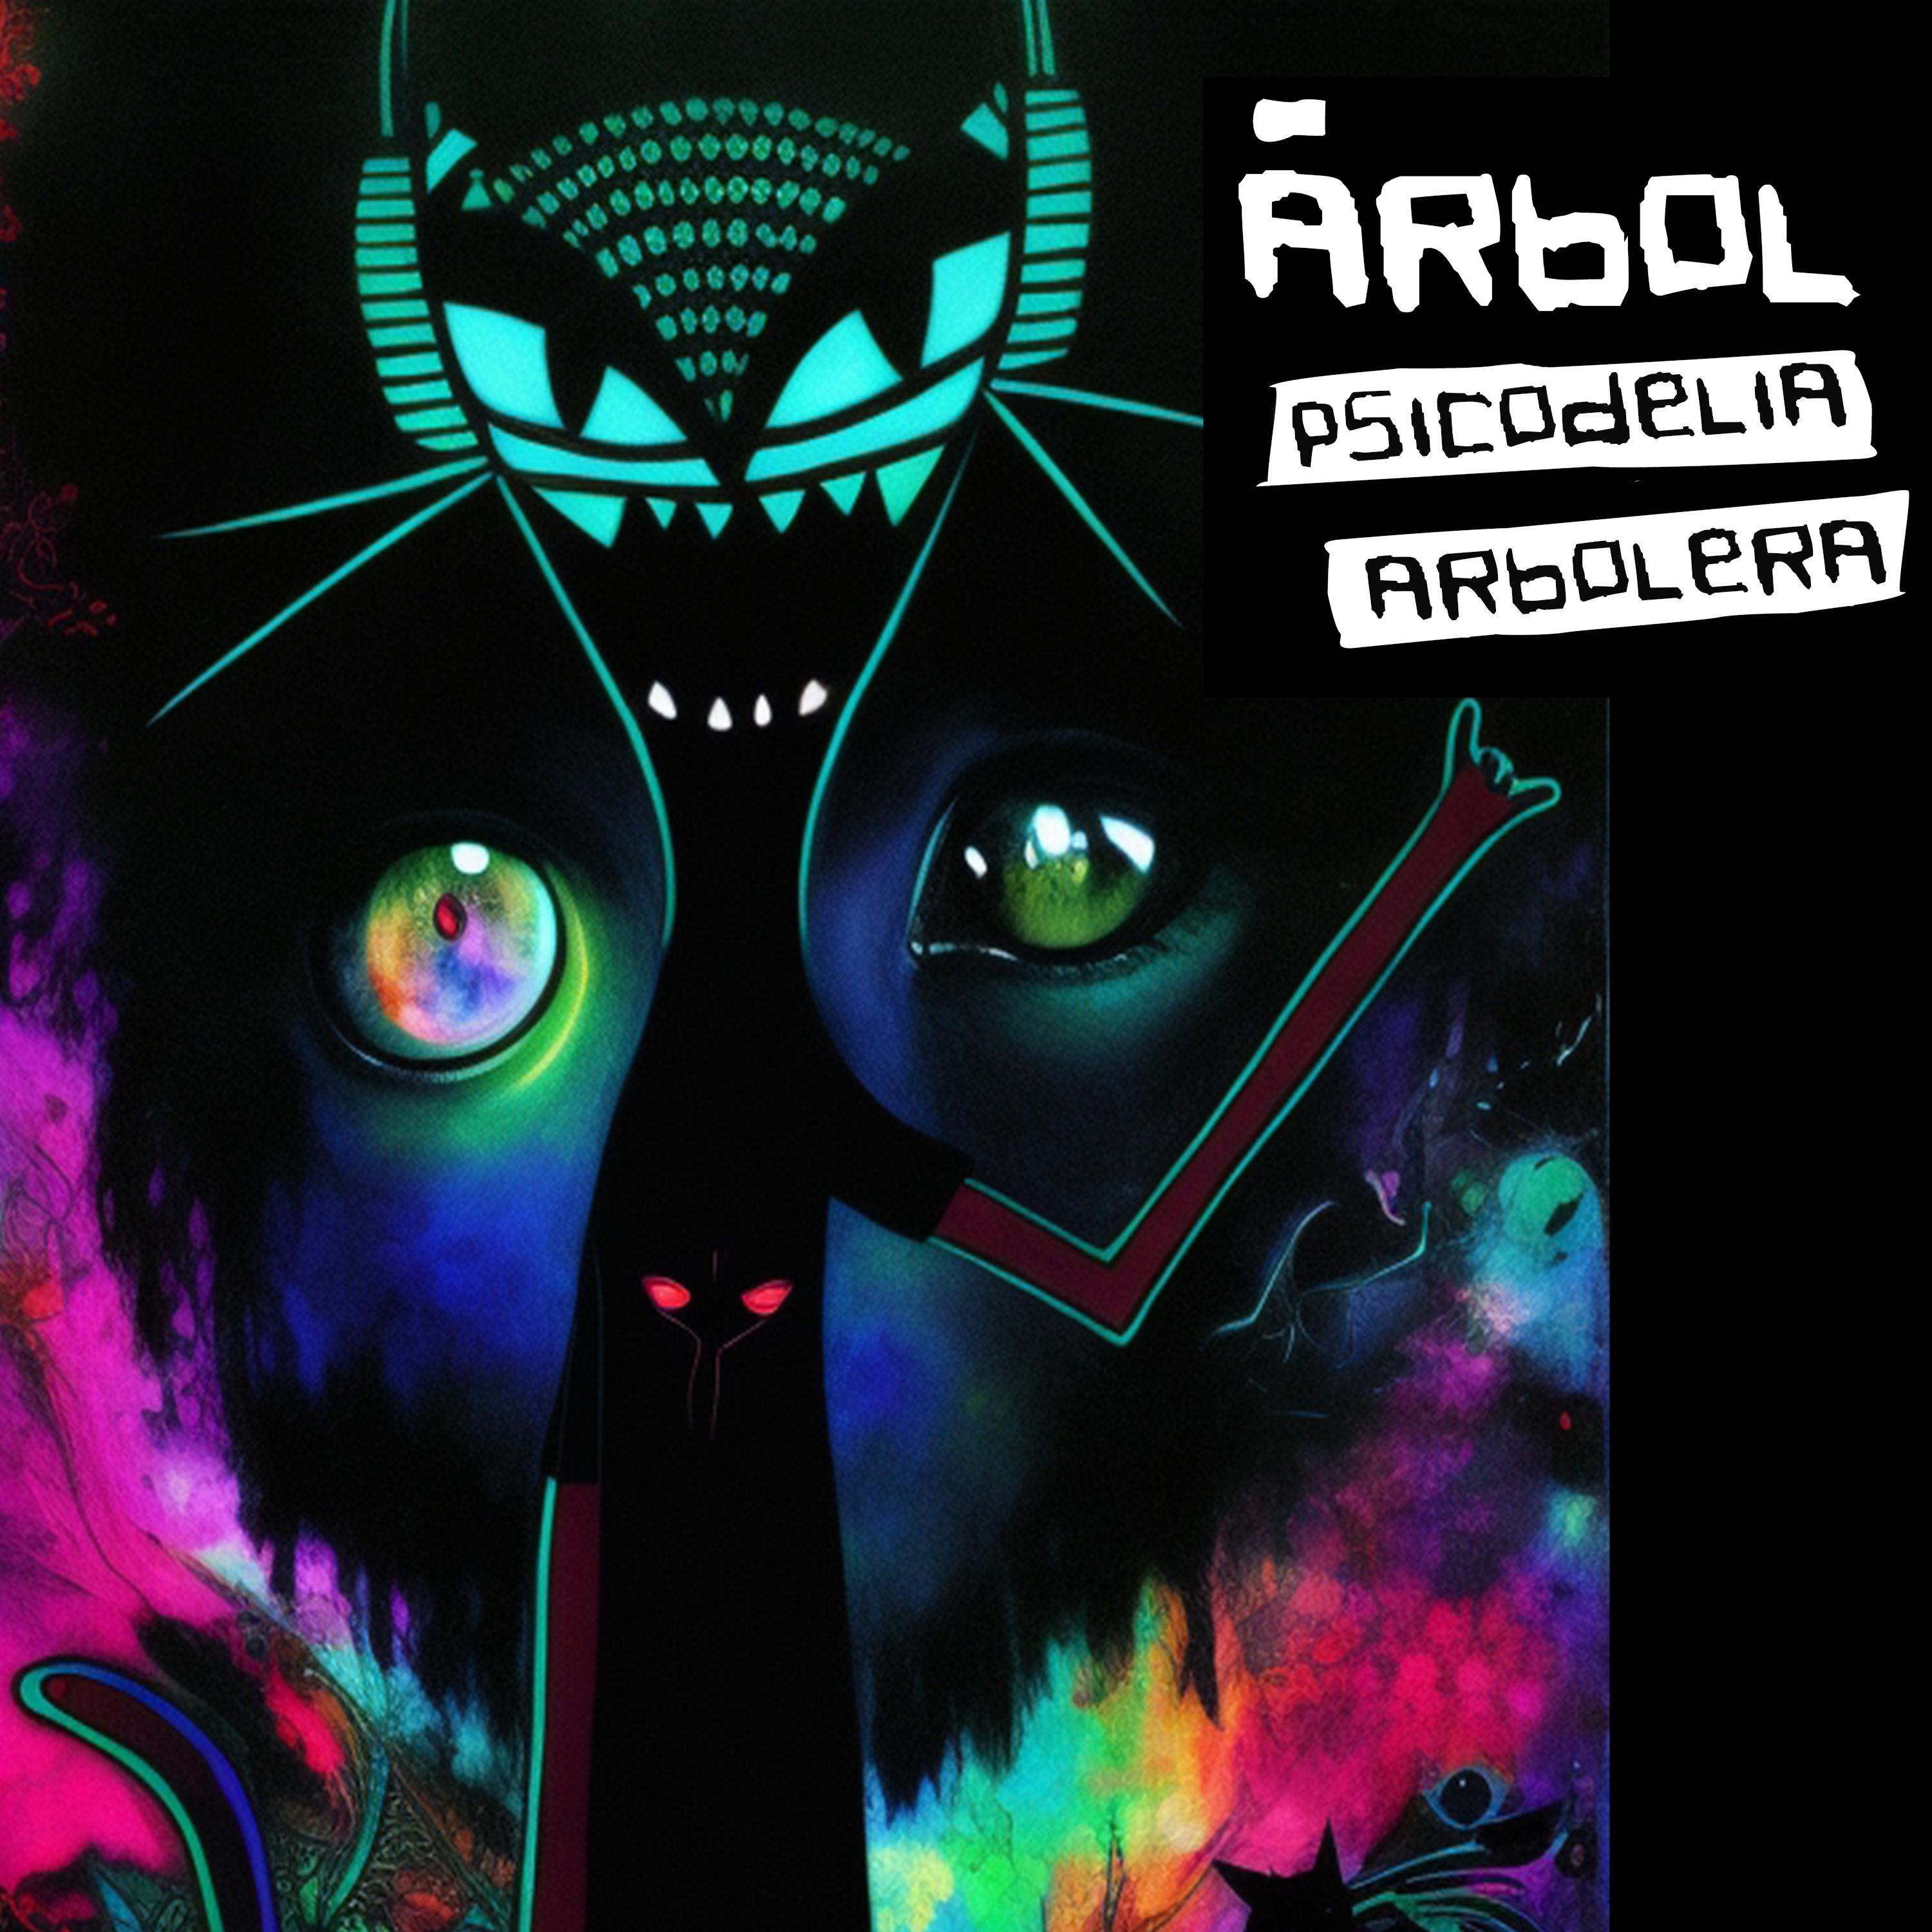 Постер альбома Psicodelia arbolera